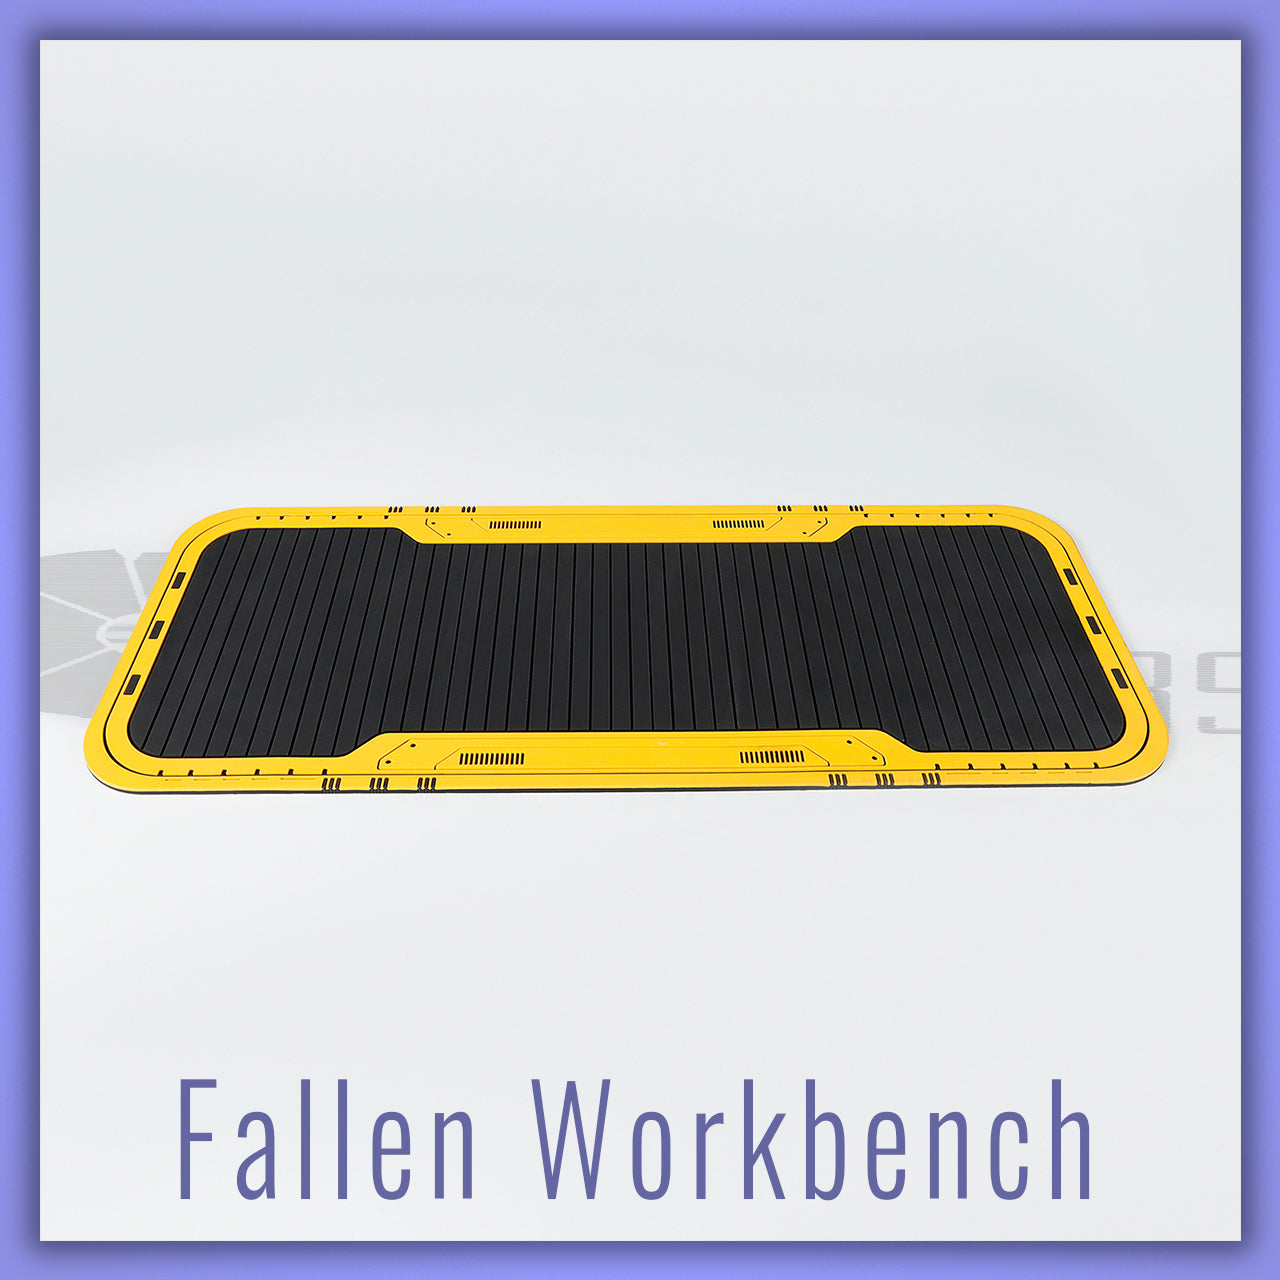 Fallen Lightsaber Workbench Mat - Parsec Saber Accessory & Add-on